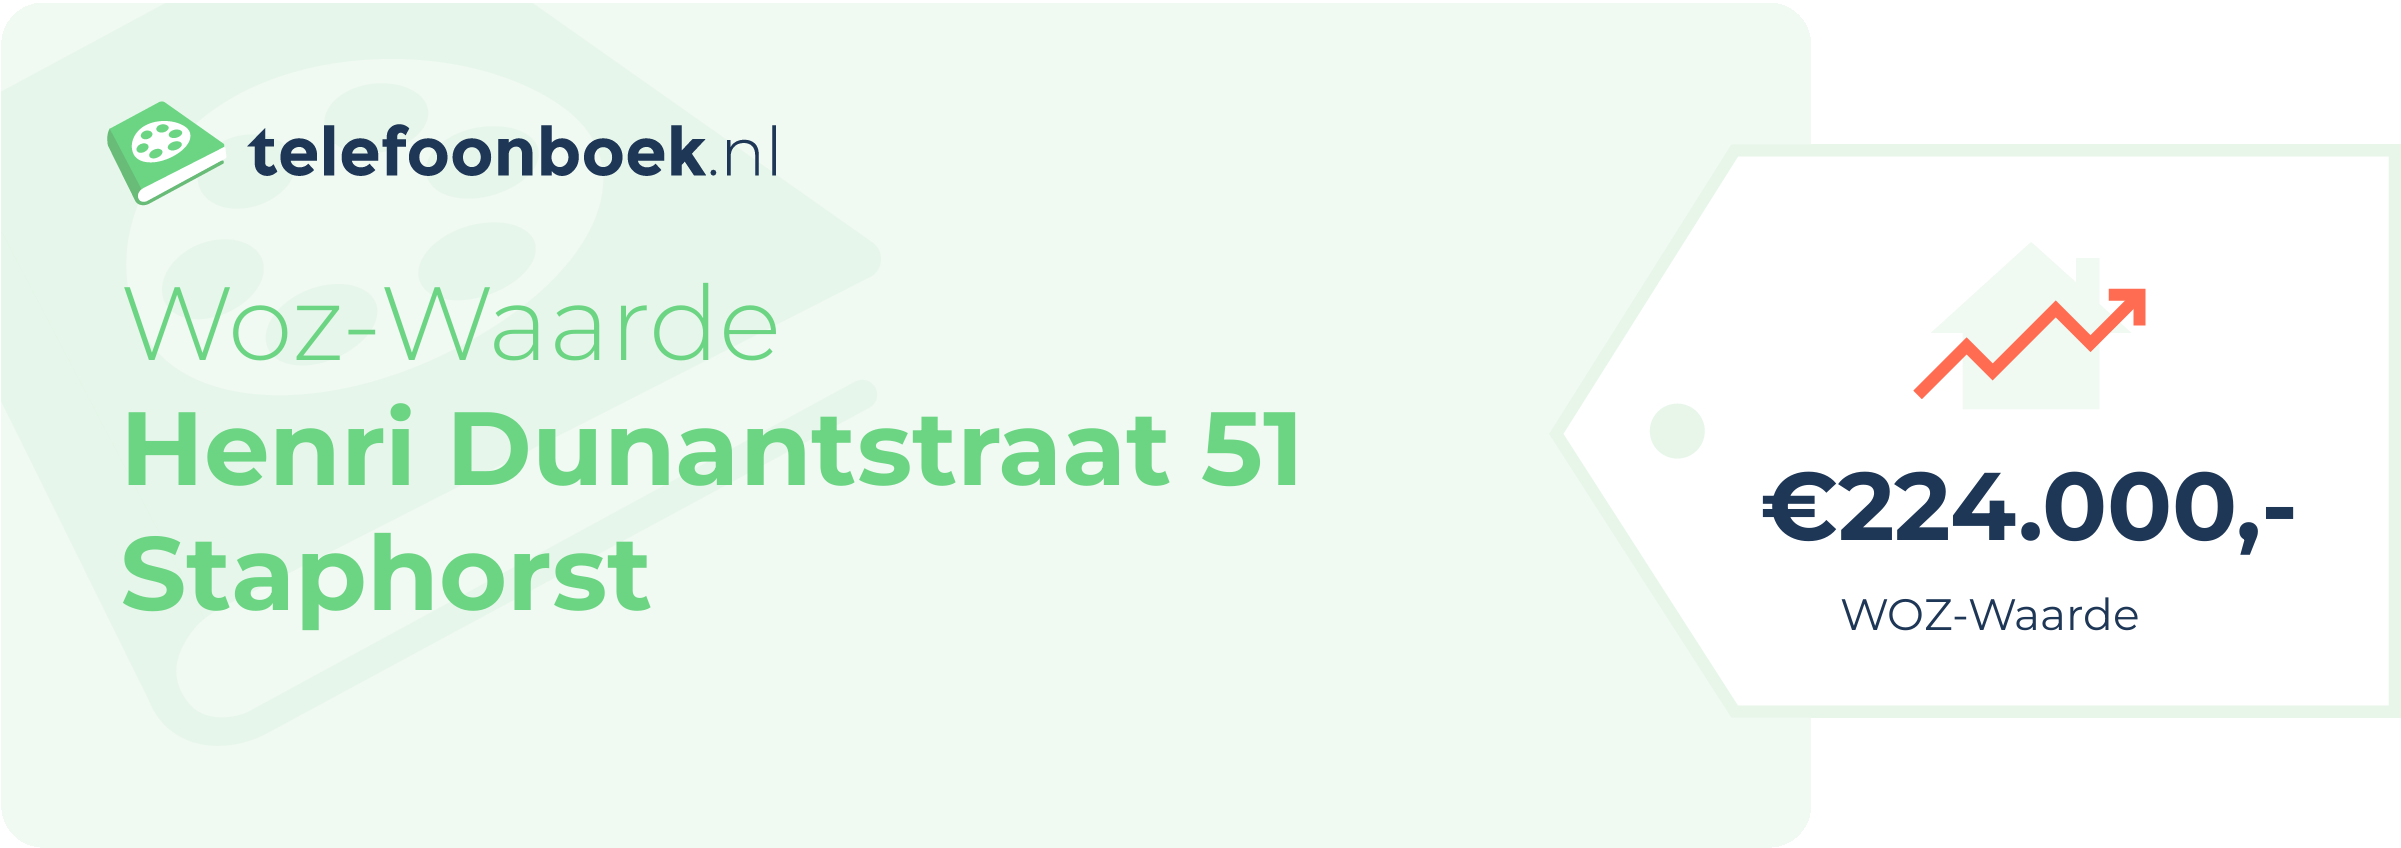 WOZ-waarde Henri Dunantstraat 51 Staphorst